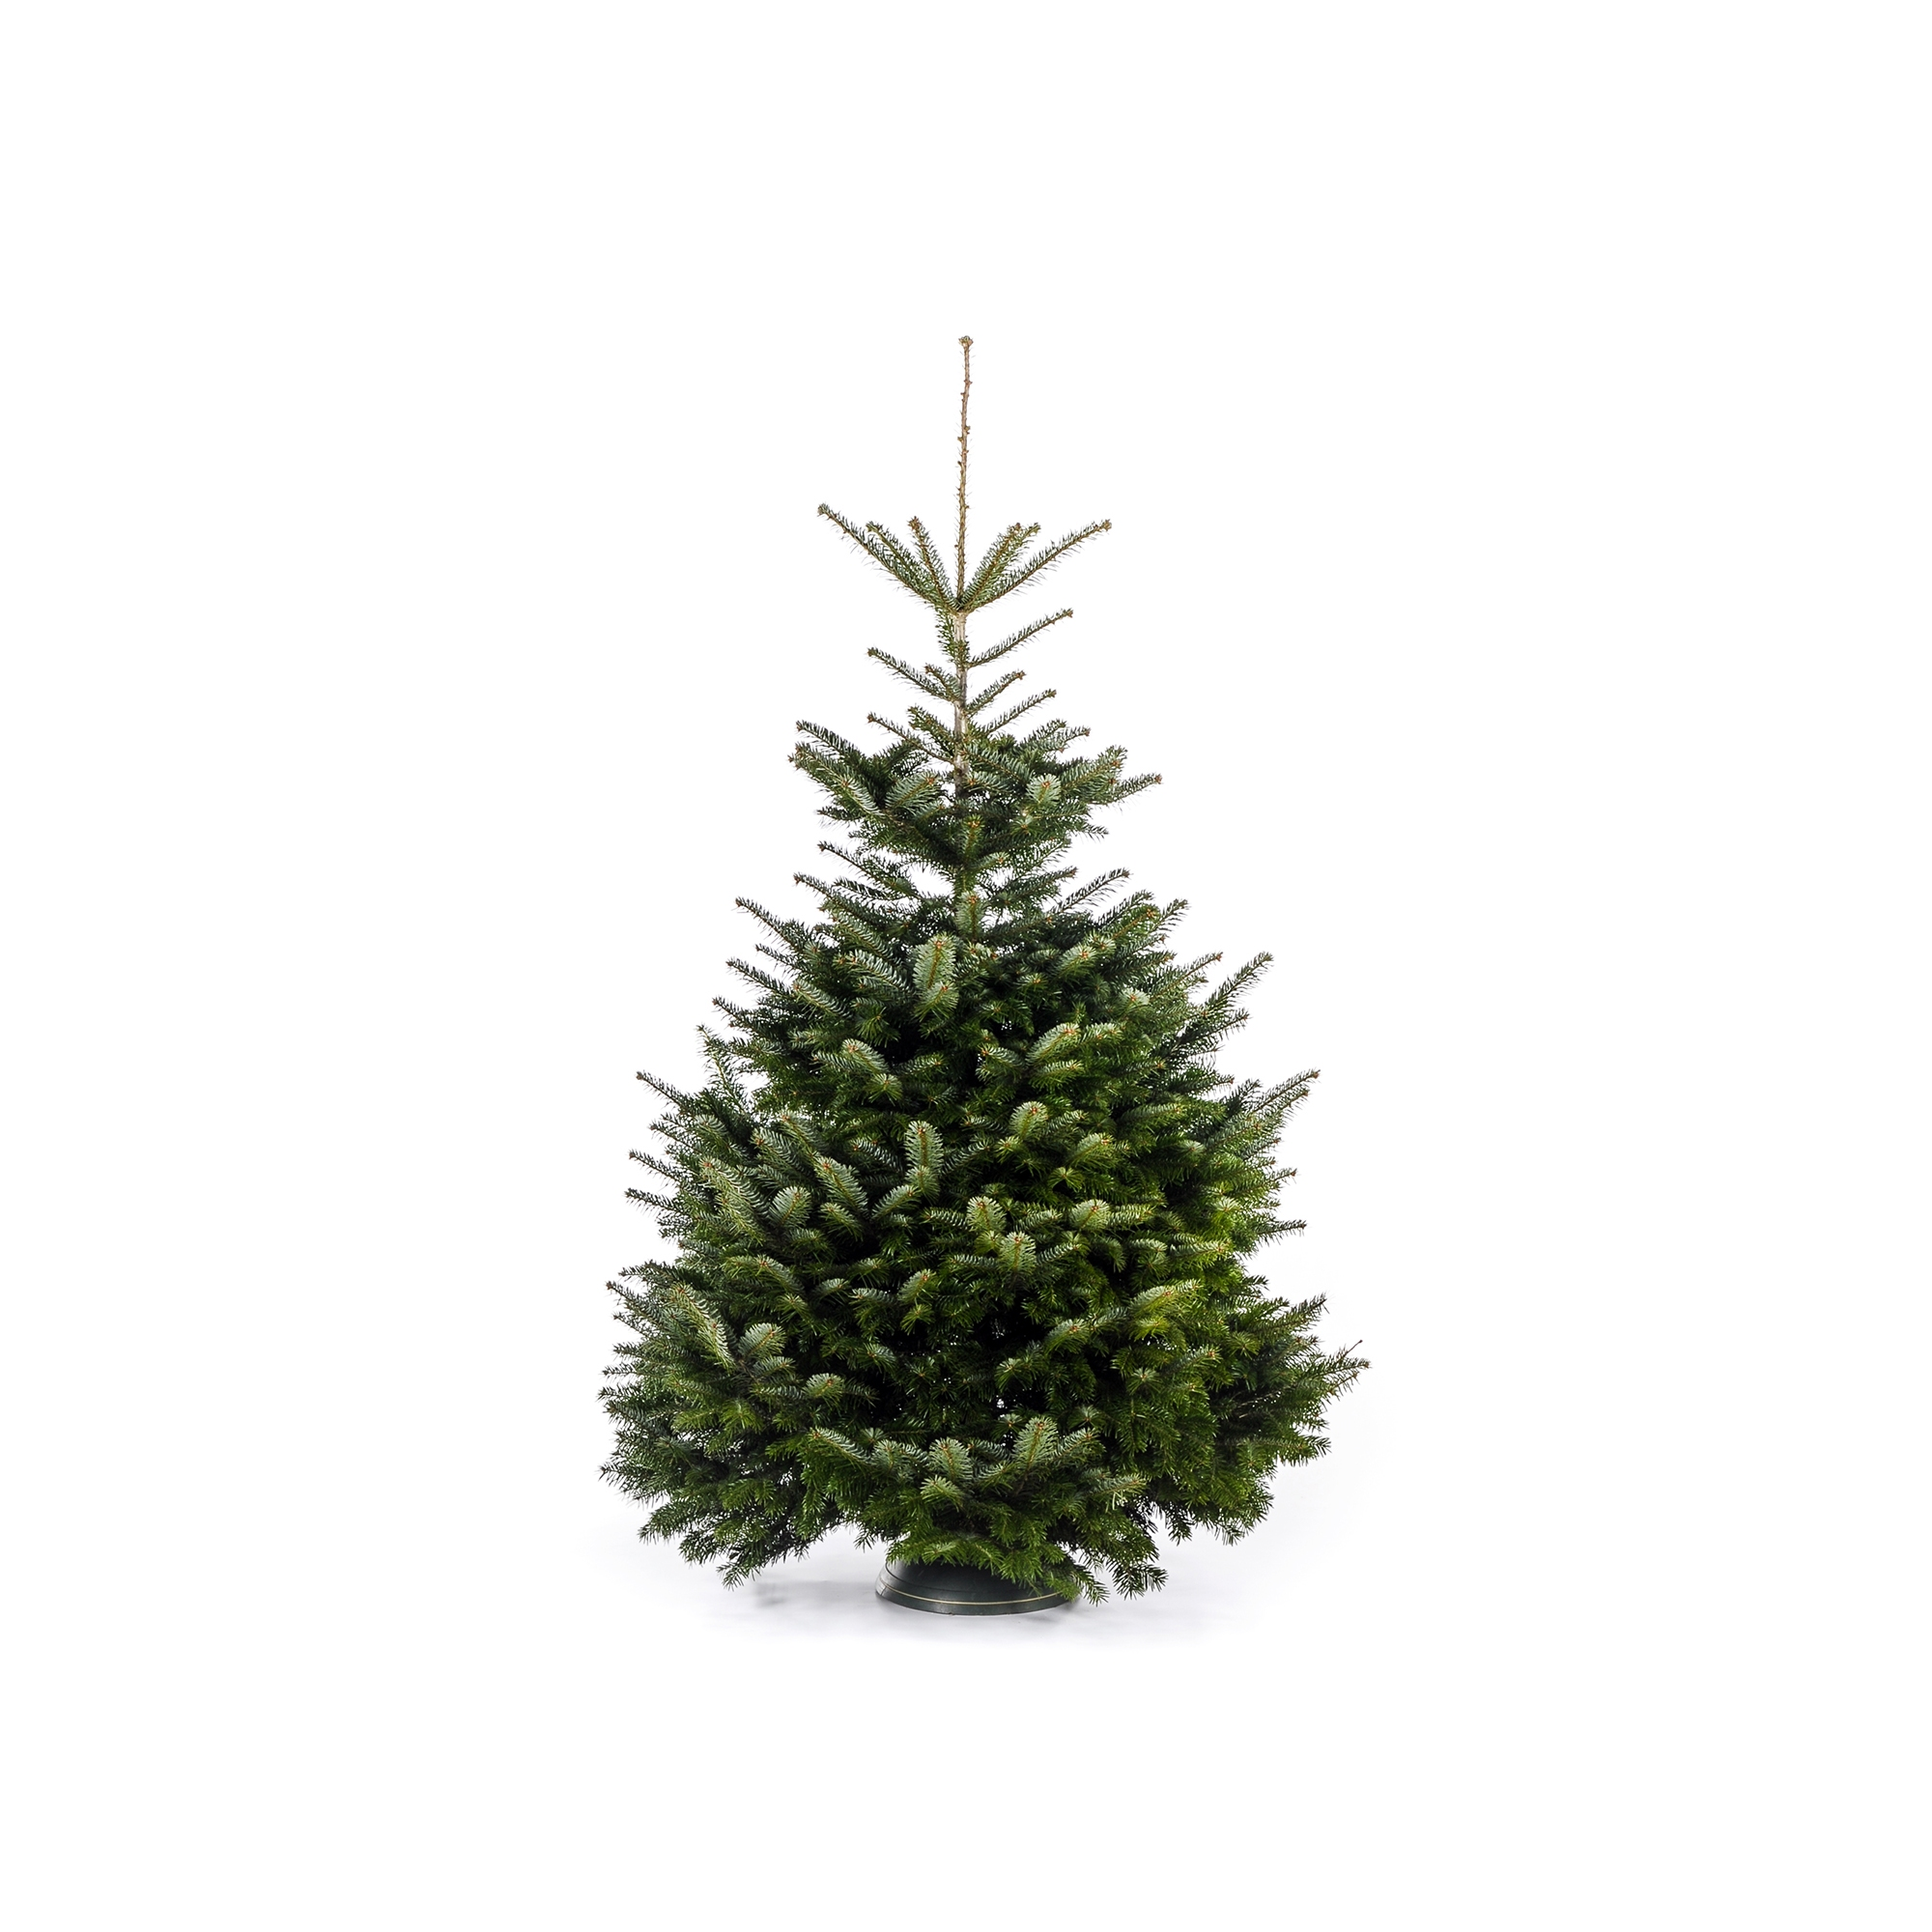 Fair Trees® Weihnachtsbaum Nordmanntanne gesägt 220-250 cm + product picture